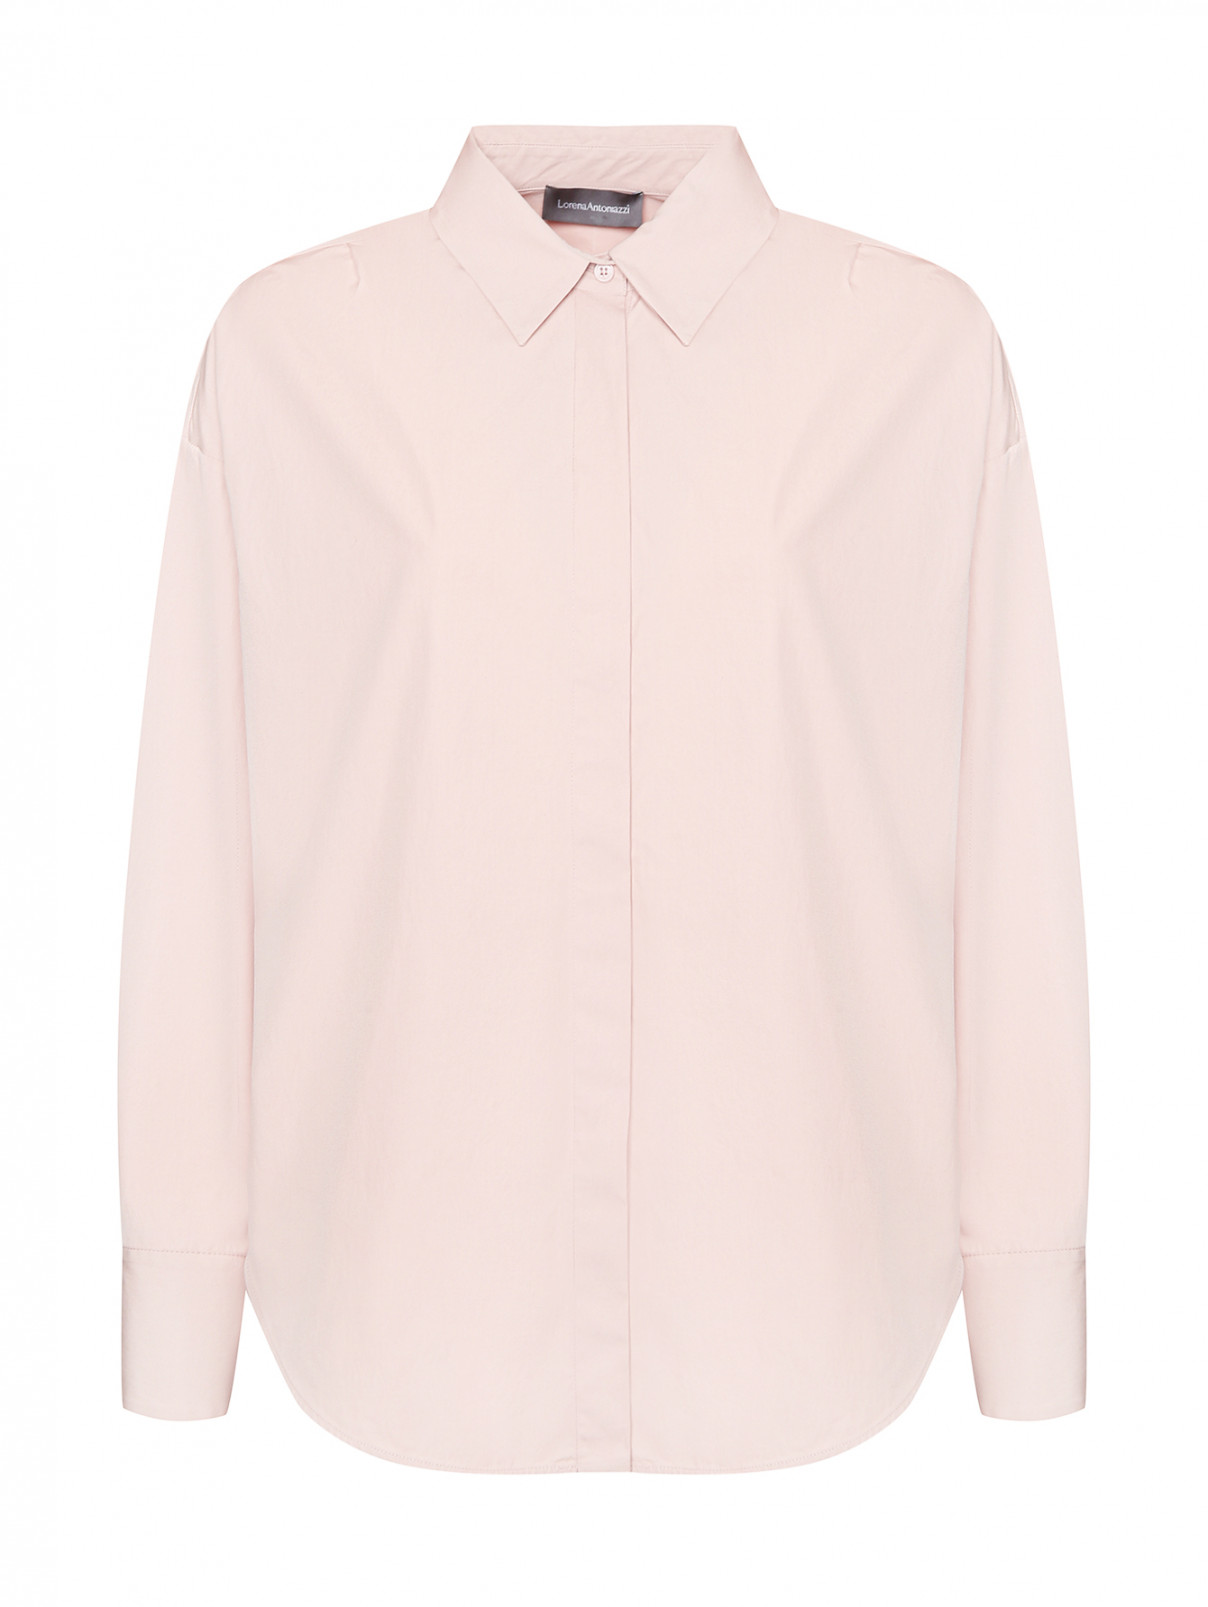 Однотонная блуза из хлопка Lorena Antoniazzi  –  Общий вид  – Цвет:  Розовый